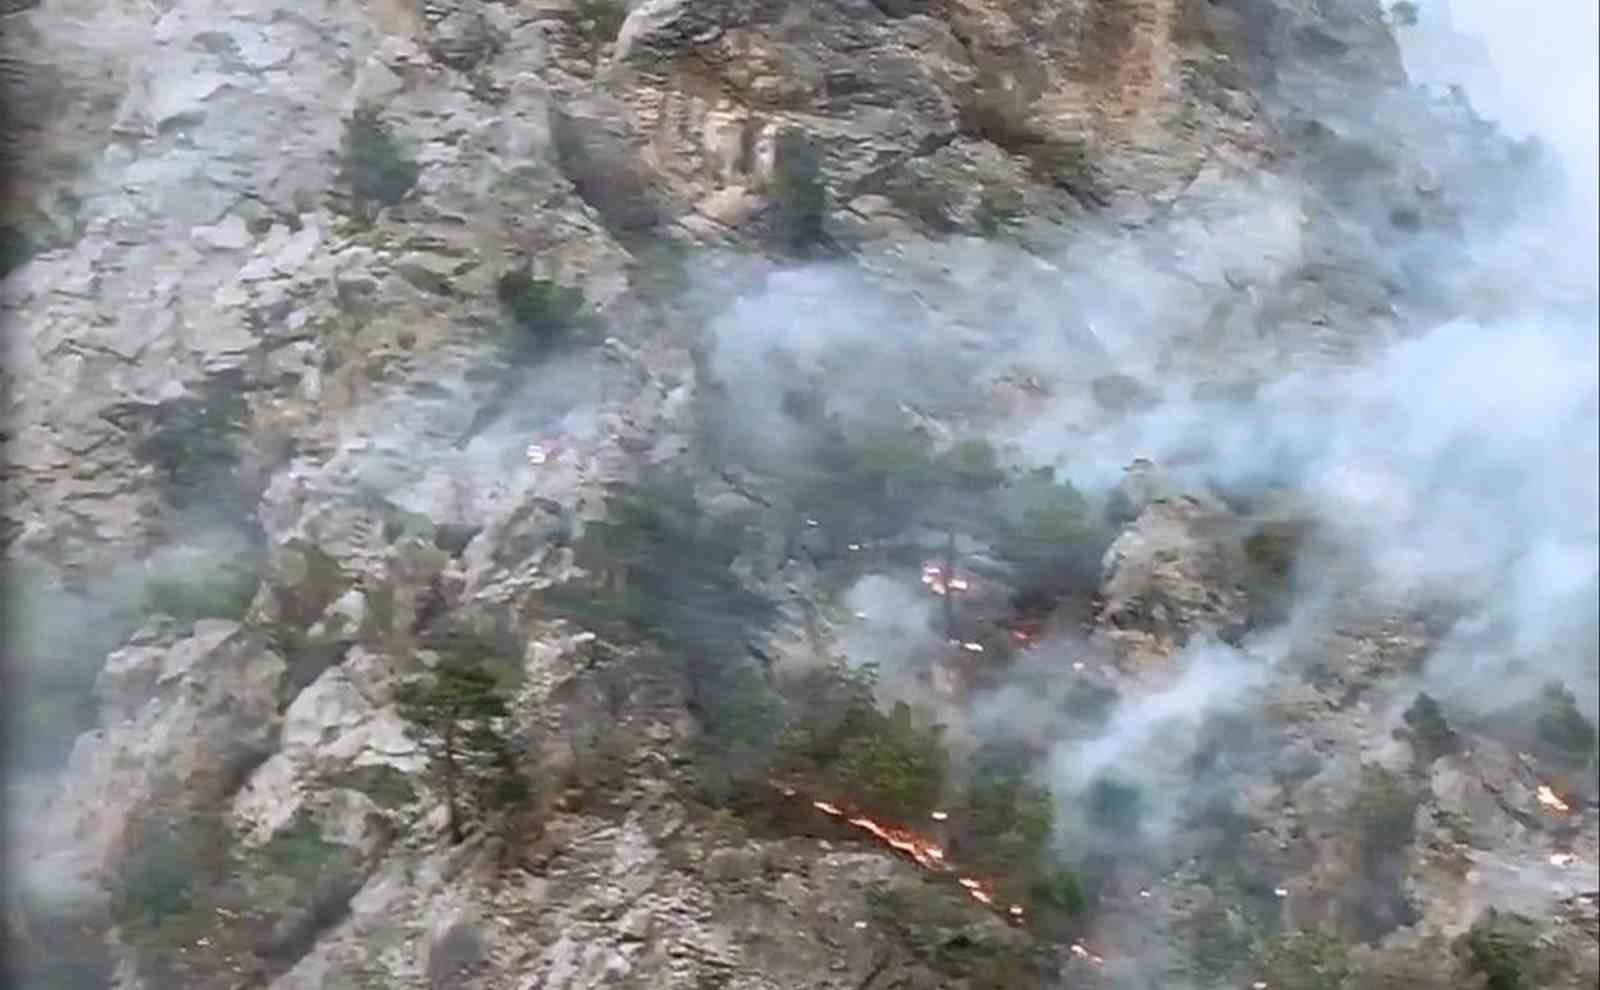 Şahinkaya Kanyonu’nda orman yangını: 1 helikopter ve 2 uçak havadan müdahale etti
